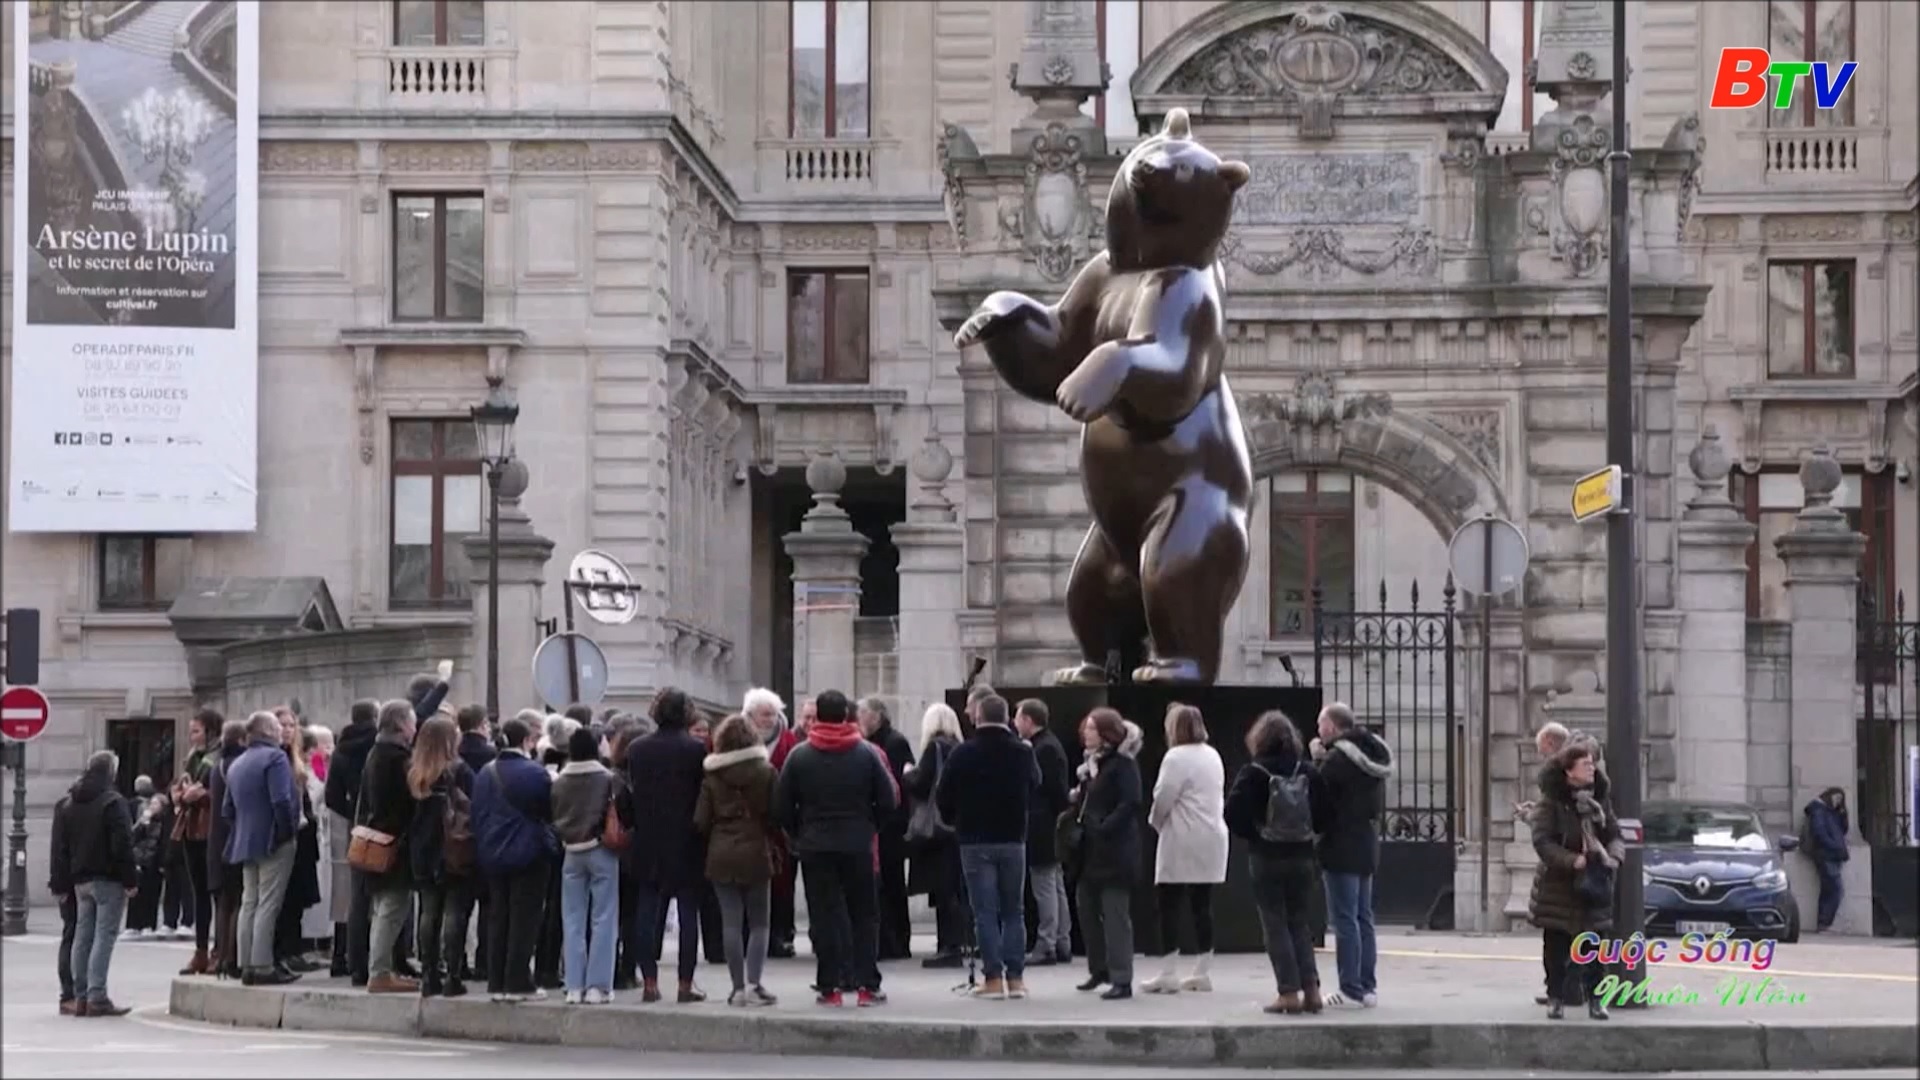 	Bất ngờ với những tác phẩm điêu khắc động vật giữa trung tâm Paris - Pháp